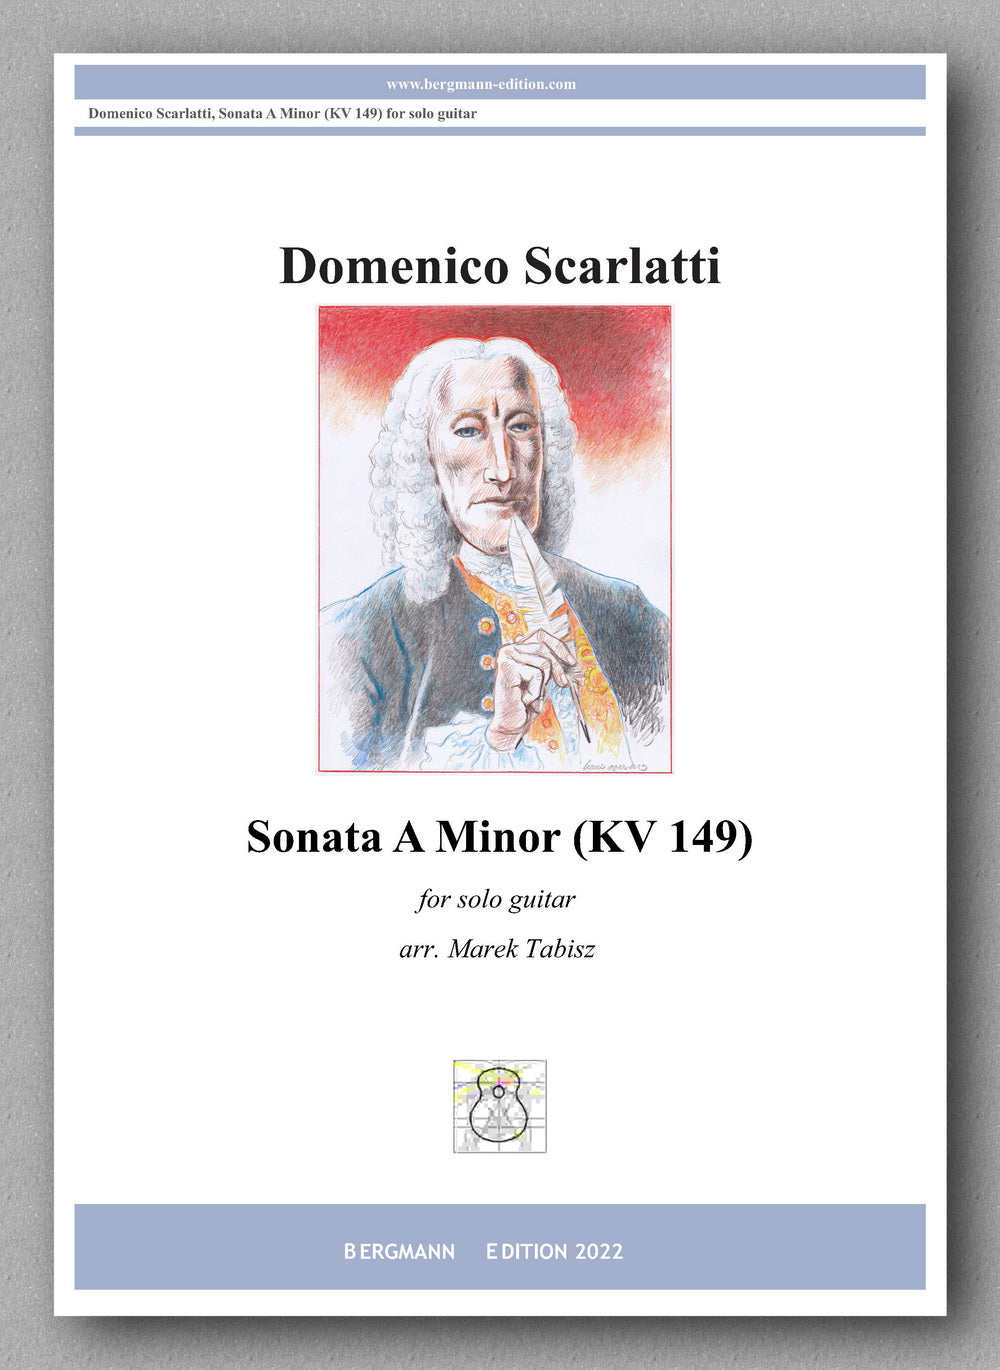 Scarlatti-Tabisz, Sonata A minor (KV 149) - cover